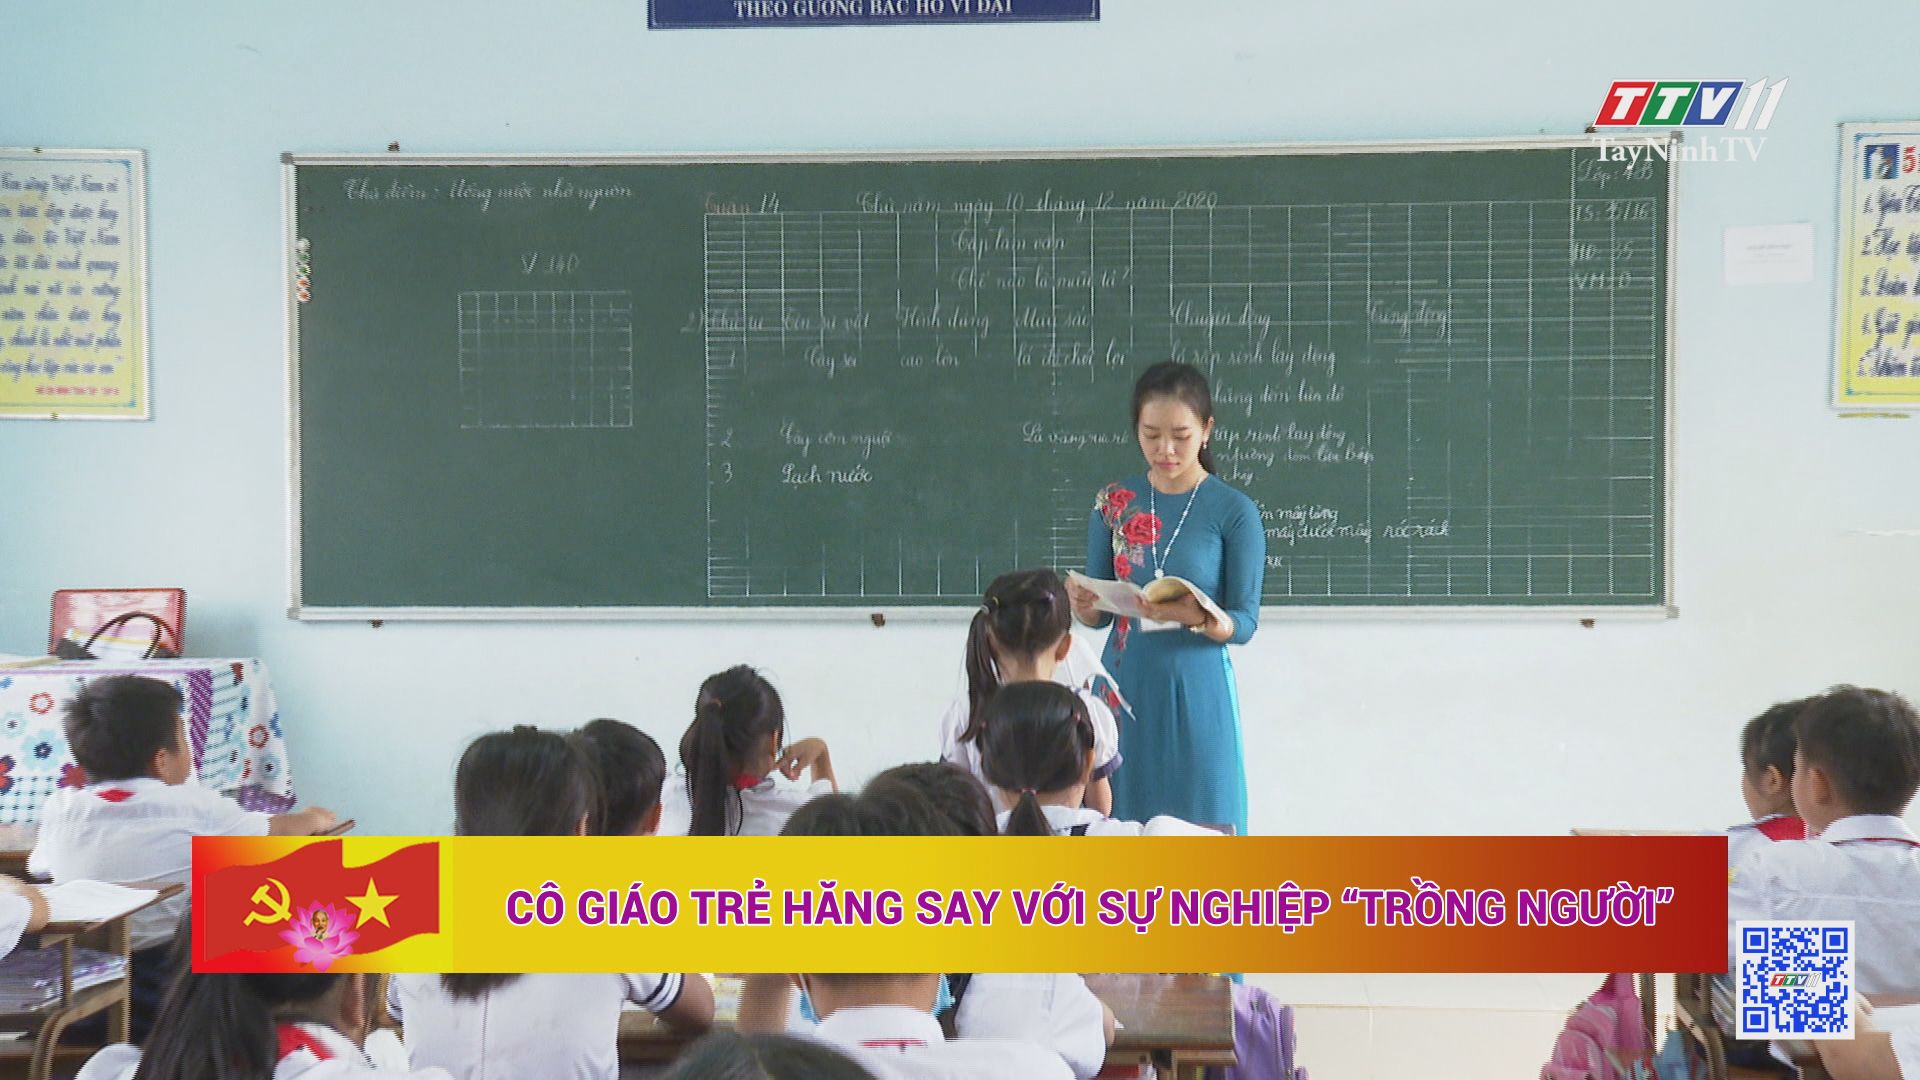 Cô giáo trẻ hăng say với sự nghiệp trồng người | HỌC TẬP VÀ LÀM THEO TƯ TƯỞNG ĐẠO ĐỨC, PHONG CÁCH HỒ CHÍ MINH | TayNinhTV 